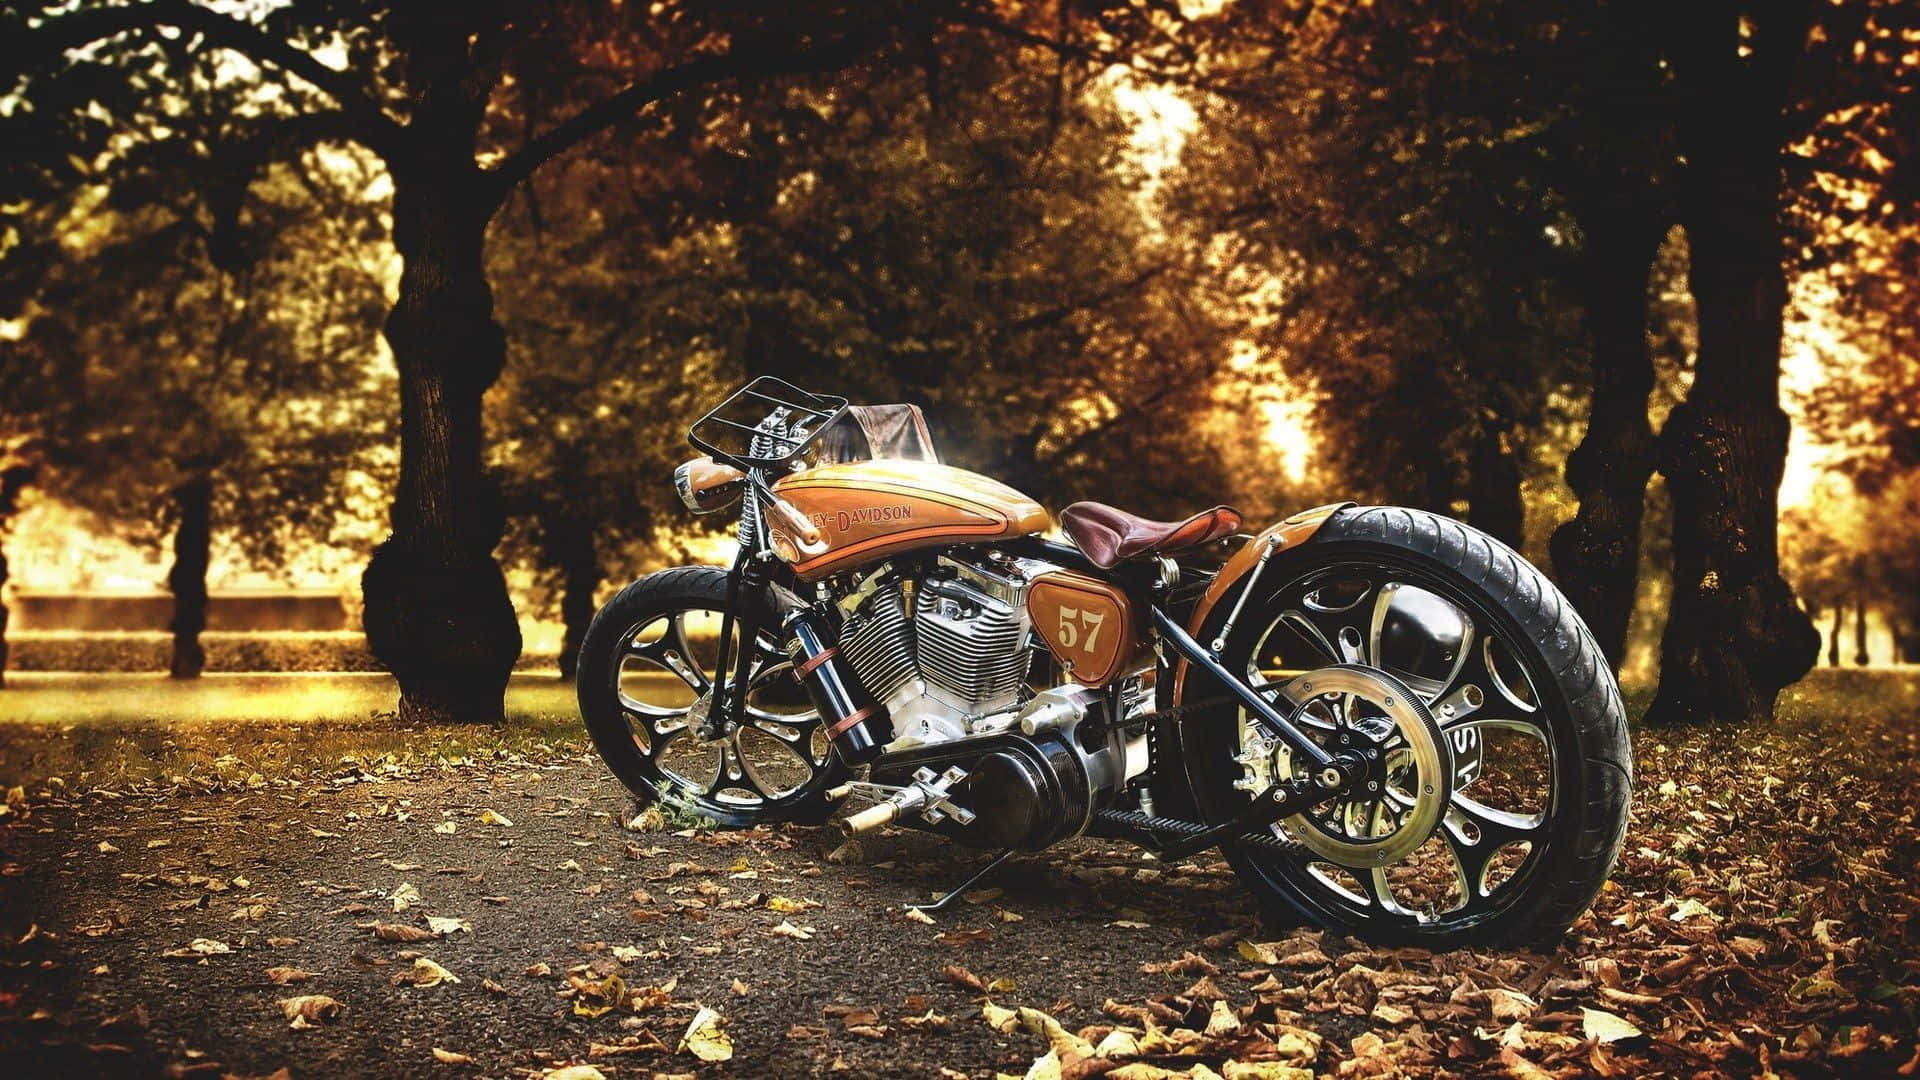 Motocicletaharley Davidson Em Um Cenário De Floresta